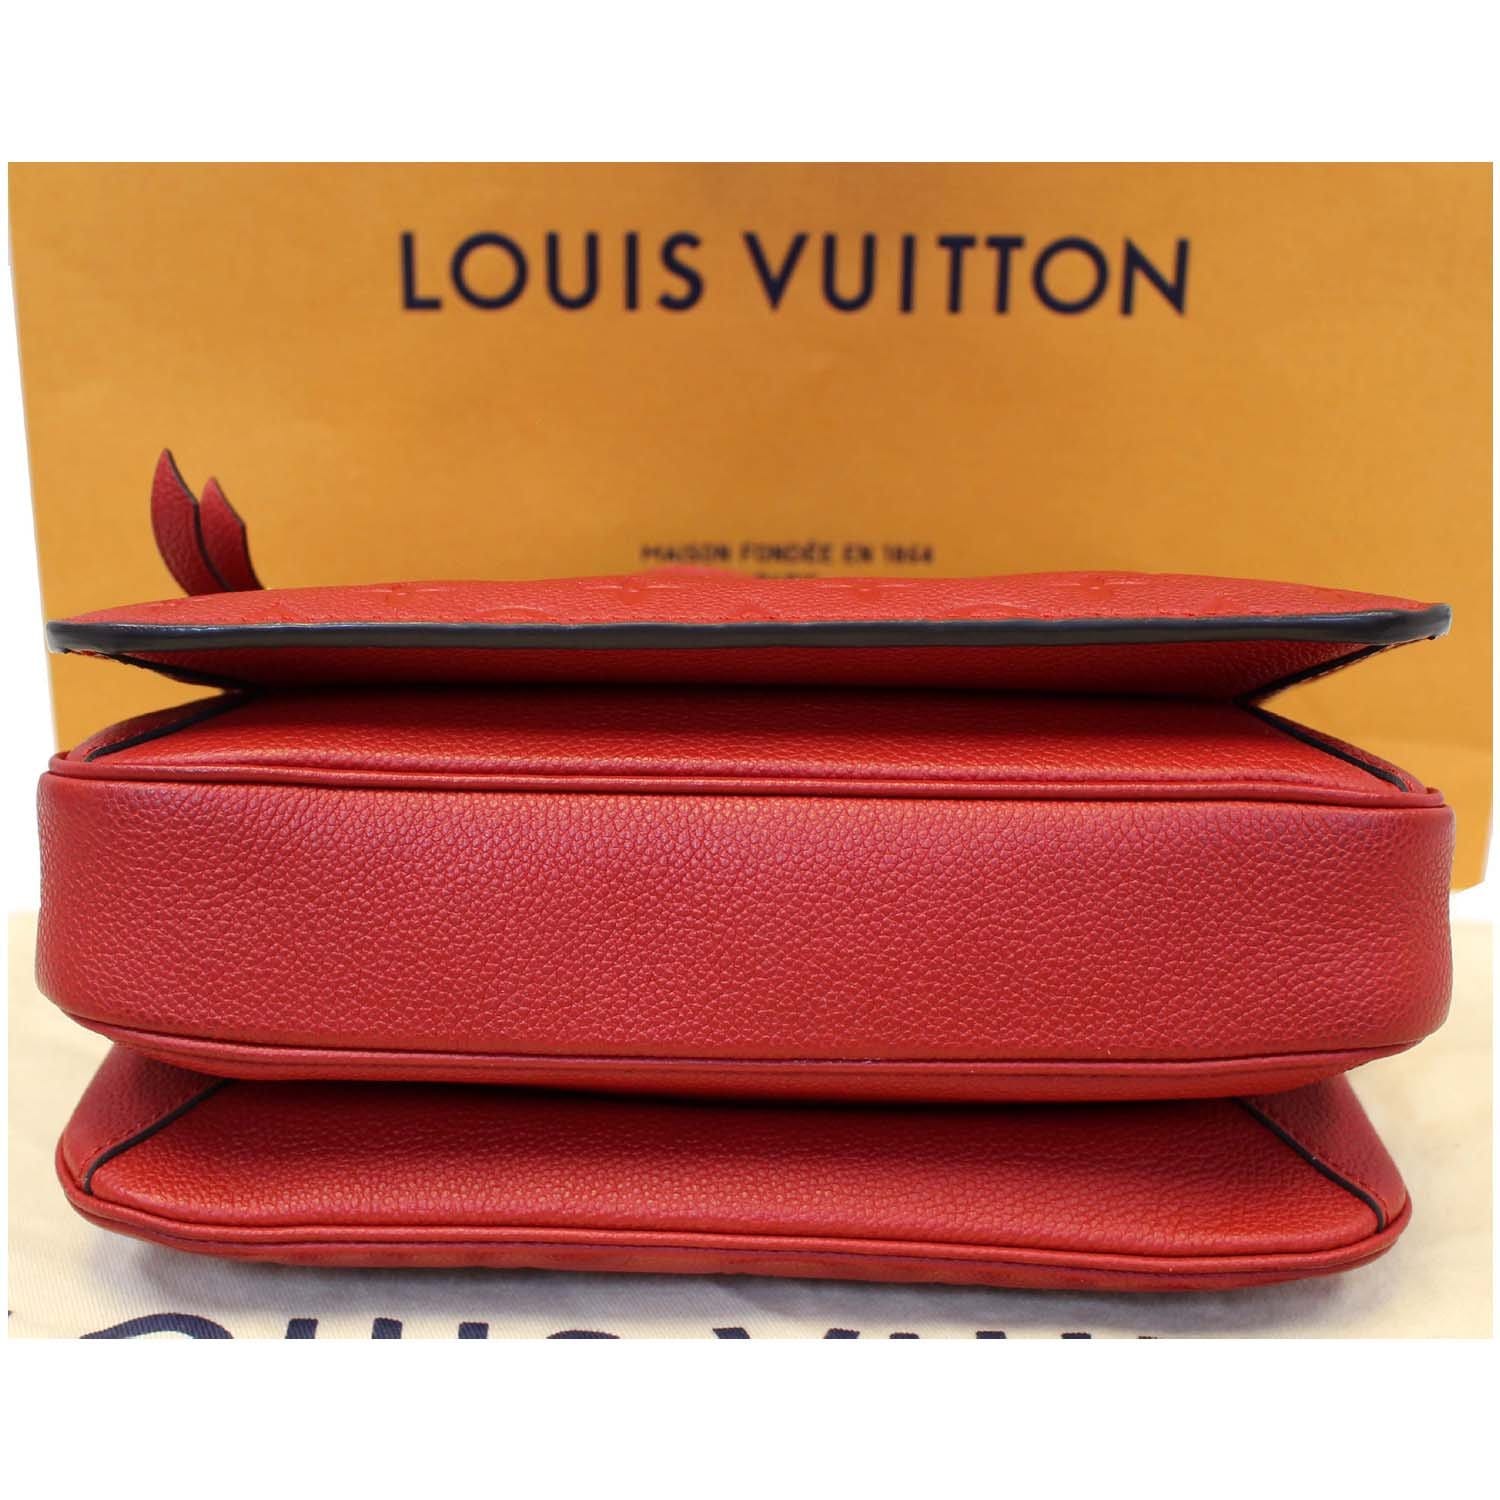 Louis Vuitton Pochette Metis Empreinte Cerise Red - LVLENKA Luxury